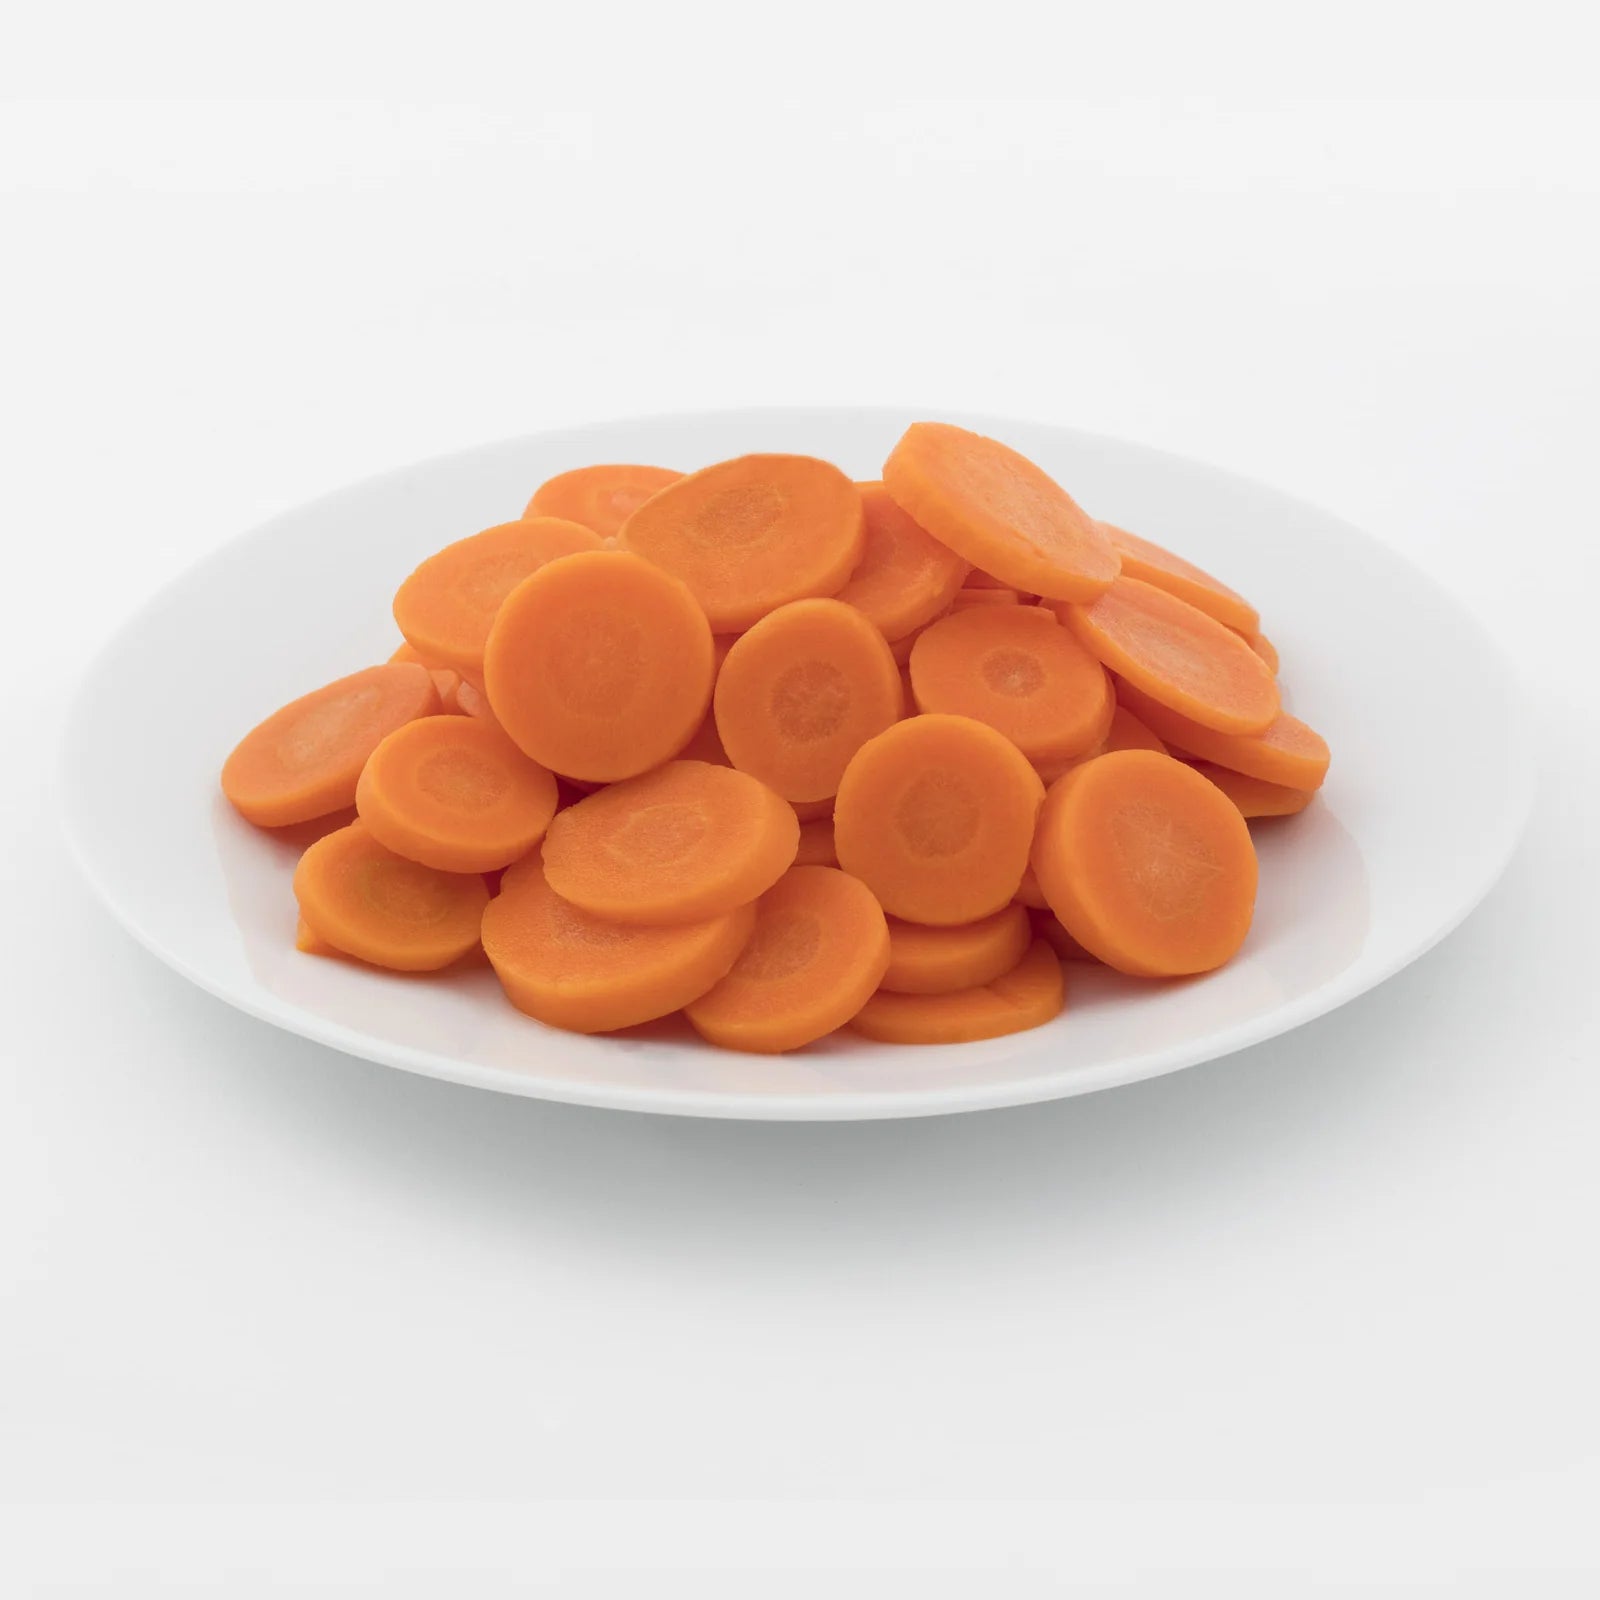 Below Zero - IQF Sliced Carrots